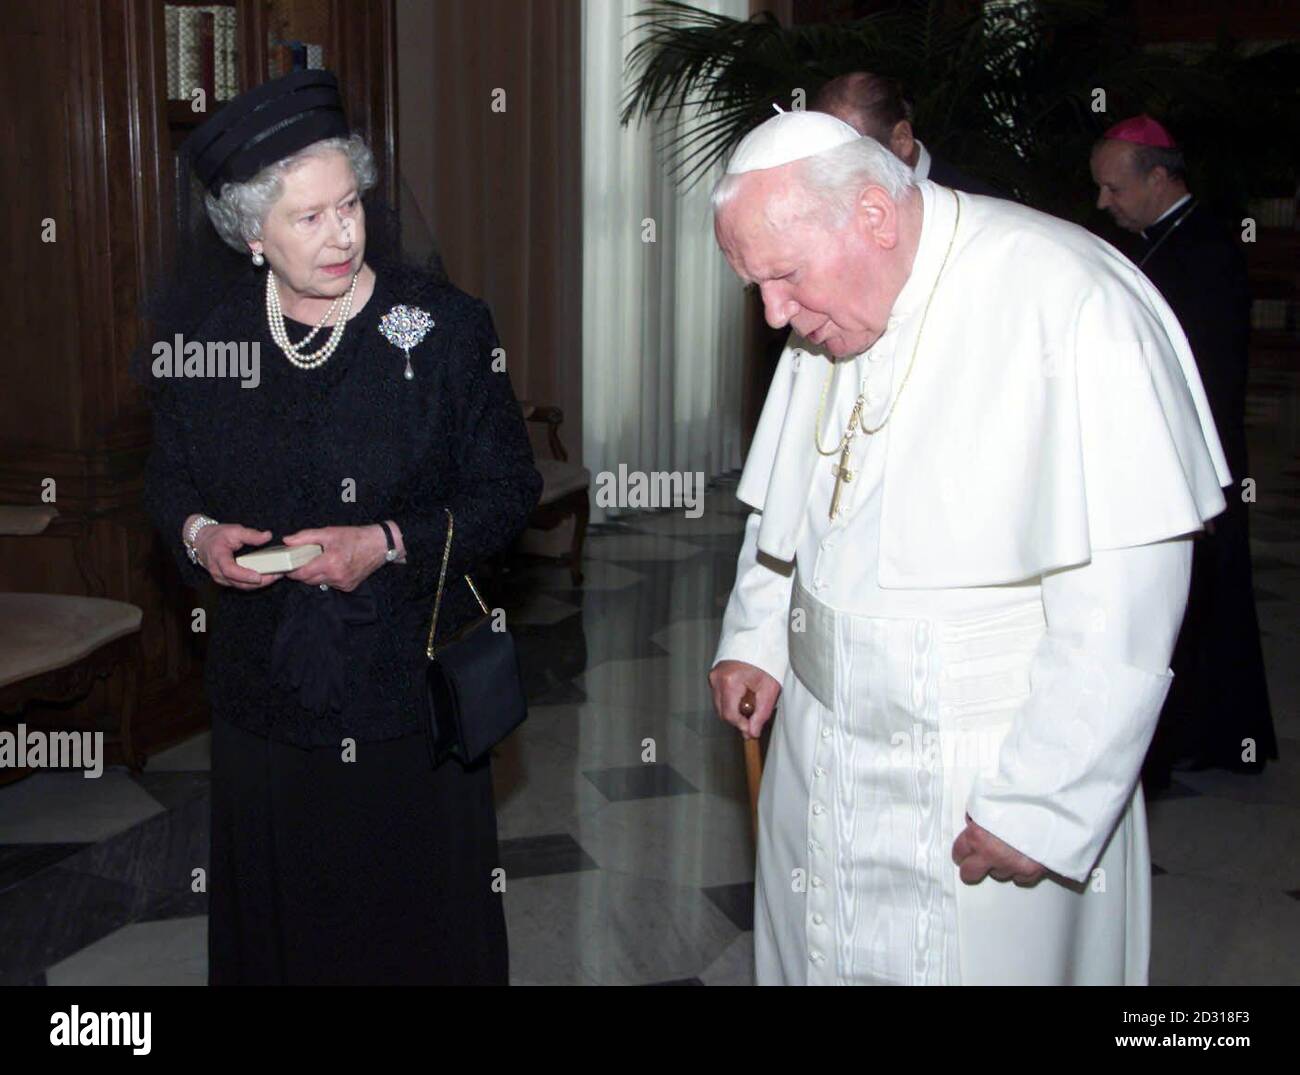 La reine Elizabeth II de Grande-Bretagne s'entretient avec le pape Jean-Paul  II lors d'une audience au Vatican à Rome, en Italie. Vêtue de noir et vêtue  d'un voile, la Reine a été